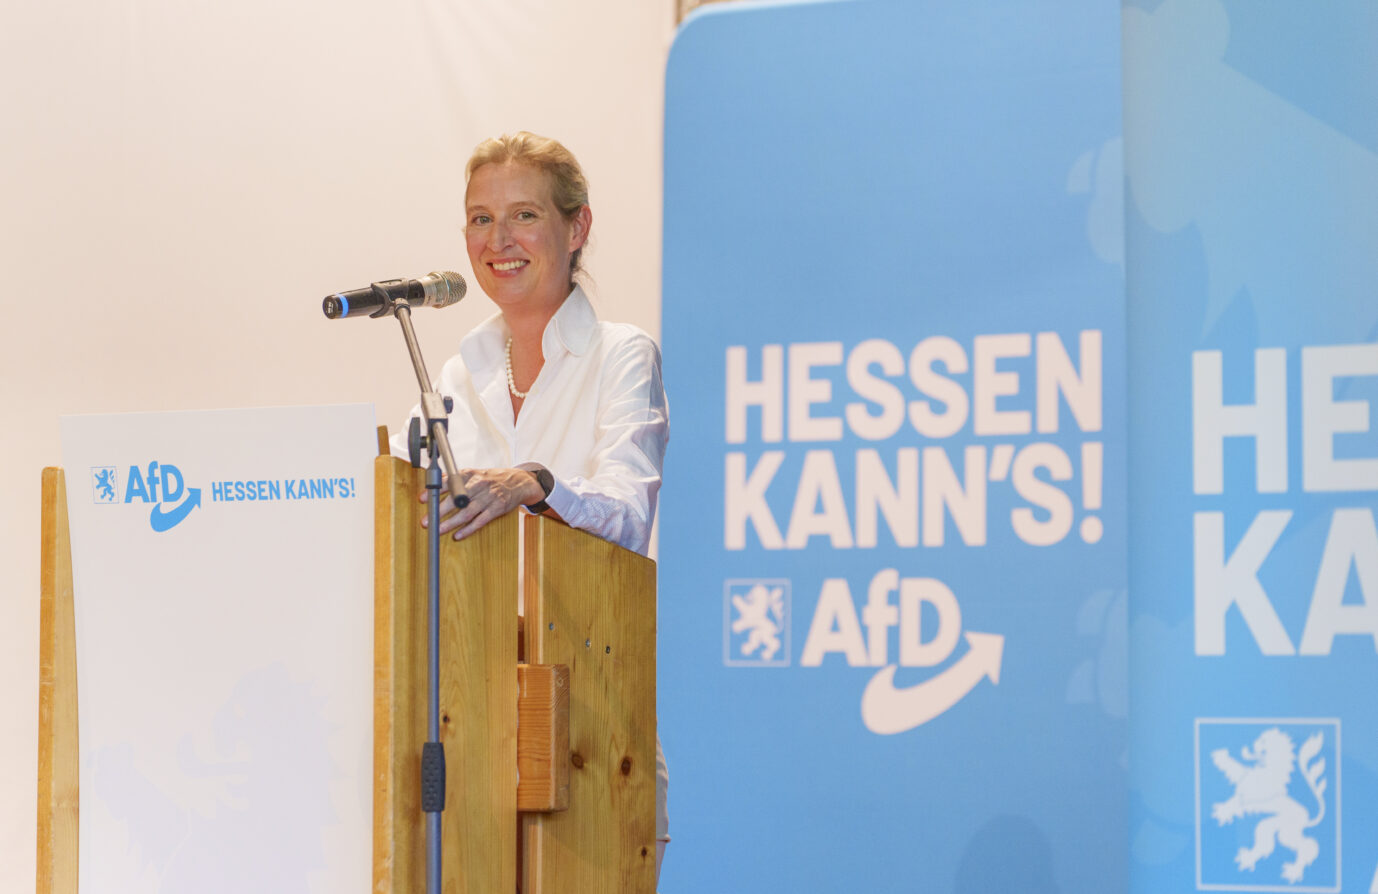 AfD-Chefin Alice Weidel im Hessen Wahlkampf: Ihre Partei könnte laut Umfrage kräftig zulegen. Foto: picture alliance/dpa | Andreas Arnold